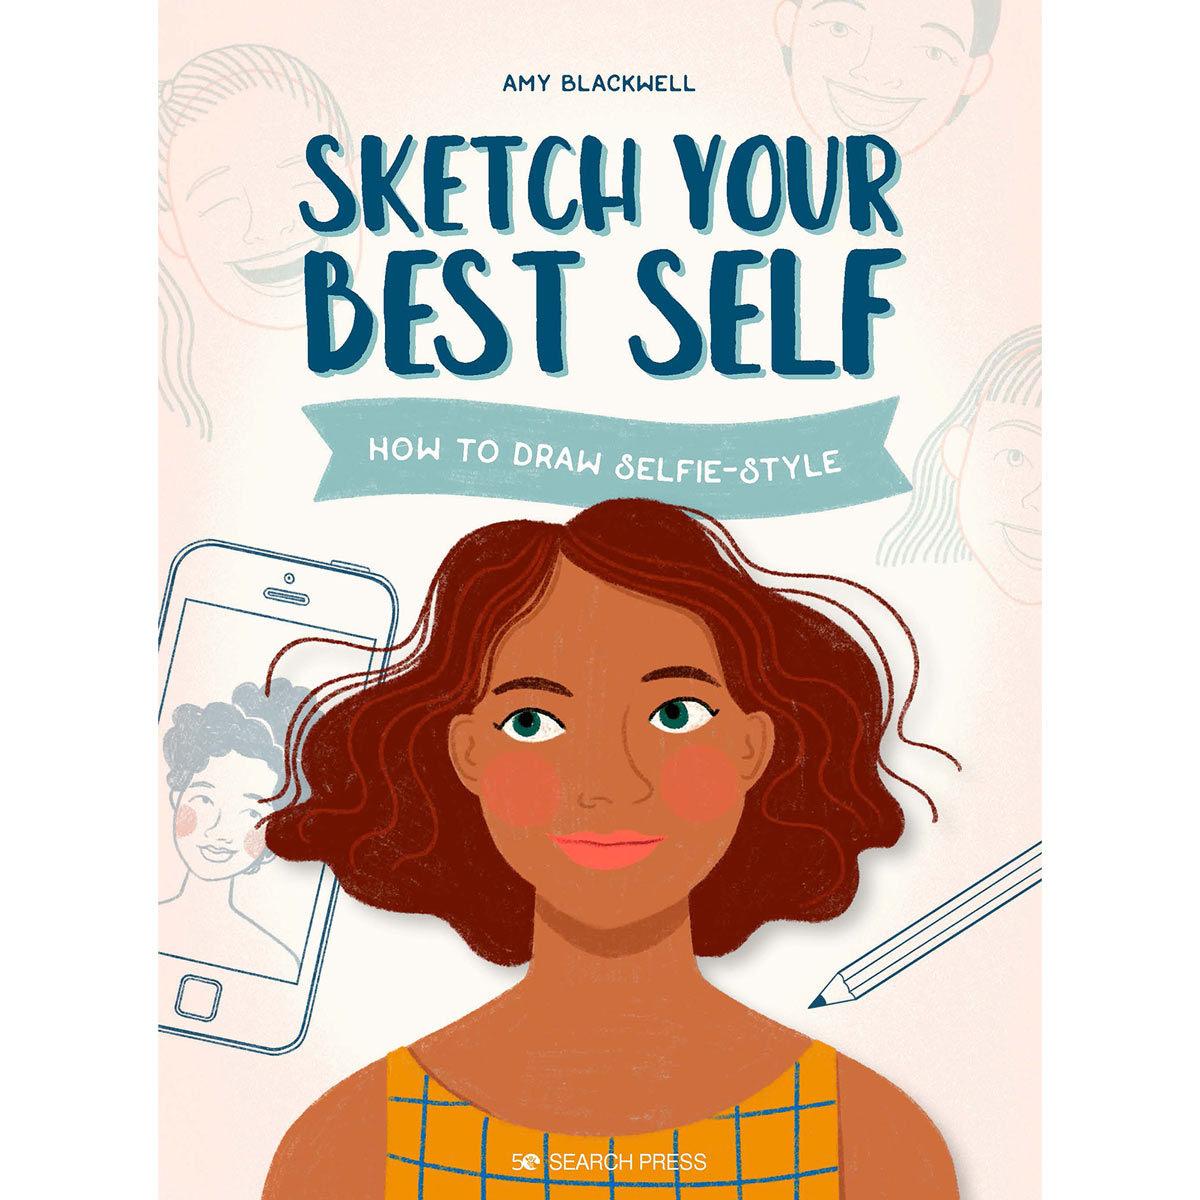 Cerca libri per la stampa-Disegna il tuo miglior sé-Come disegnare lo stile selfie